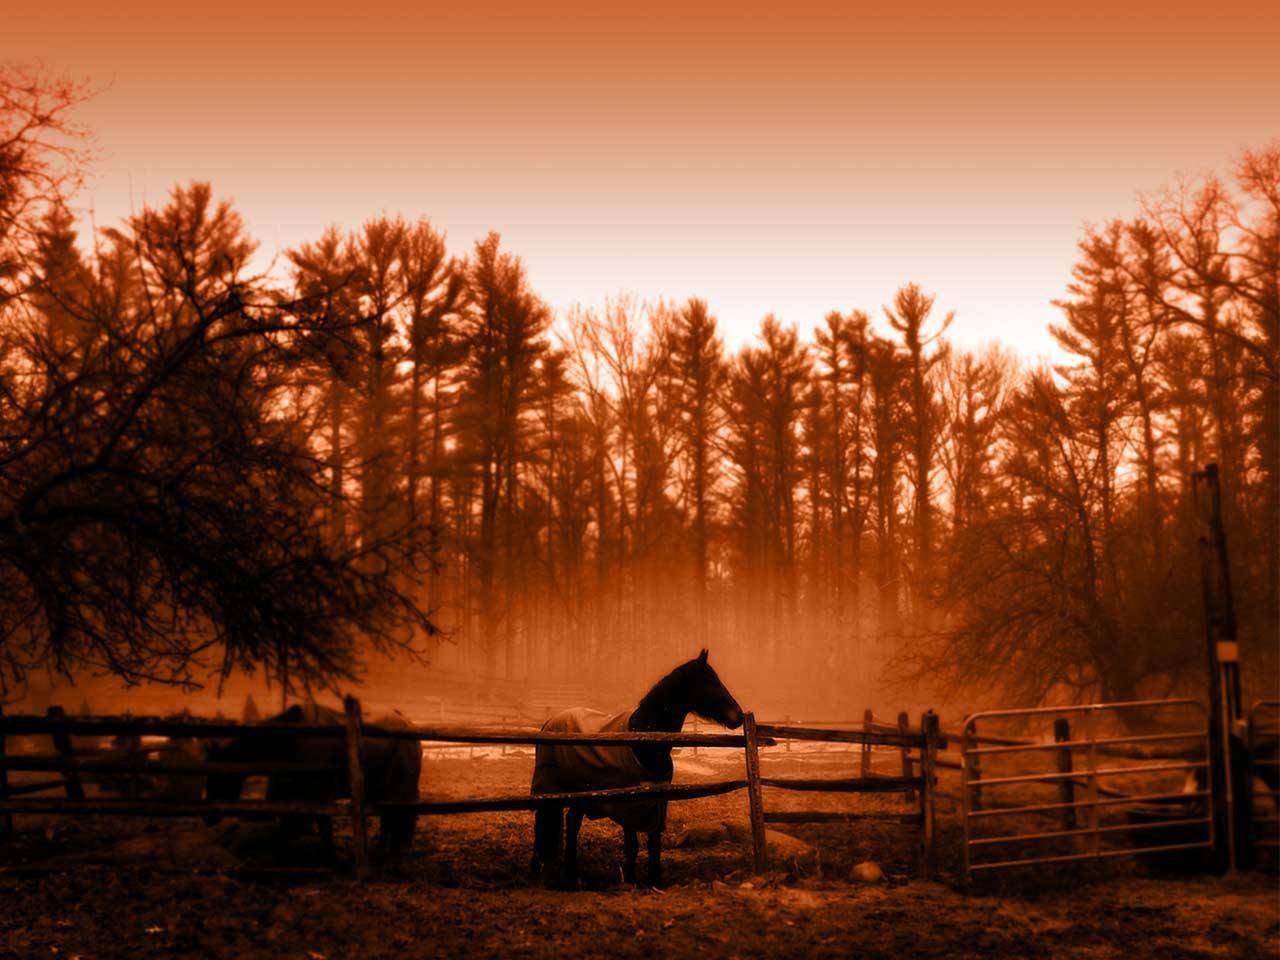 обои Лошадь в стойле фото